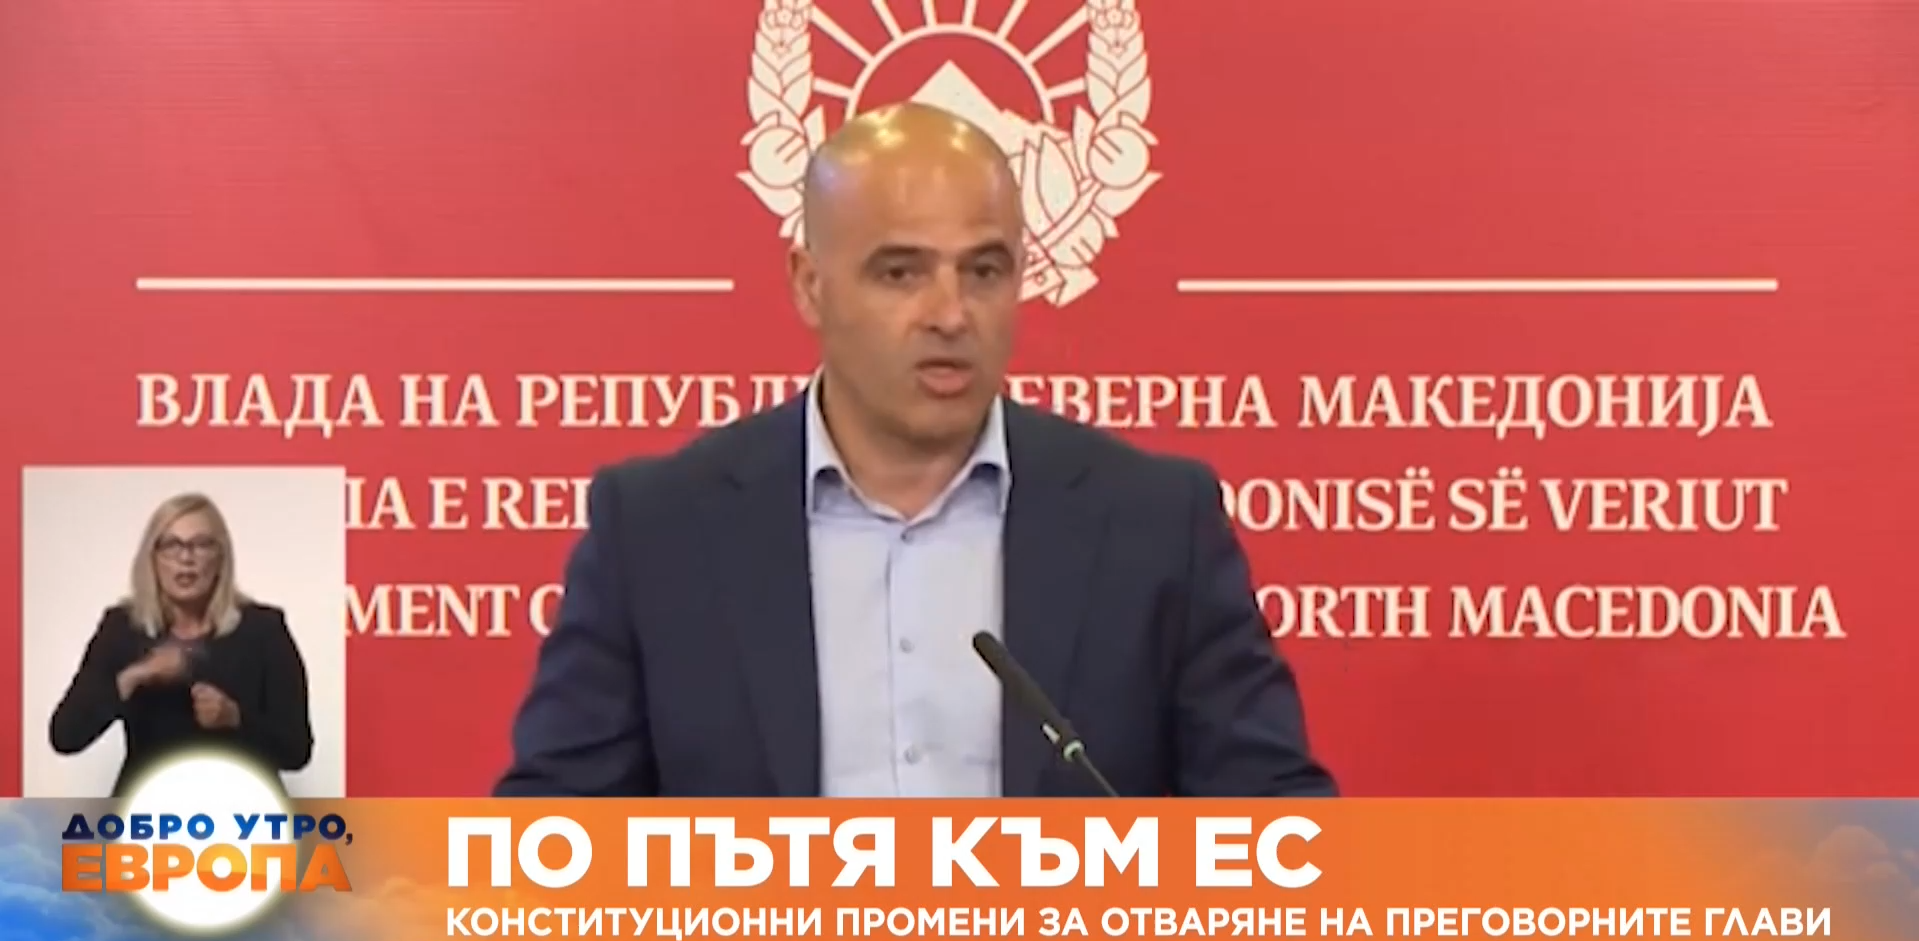 Македонският премиер Димитър Ковачевски призова всички 120 депутати да подкрепят